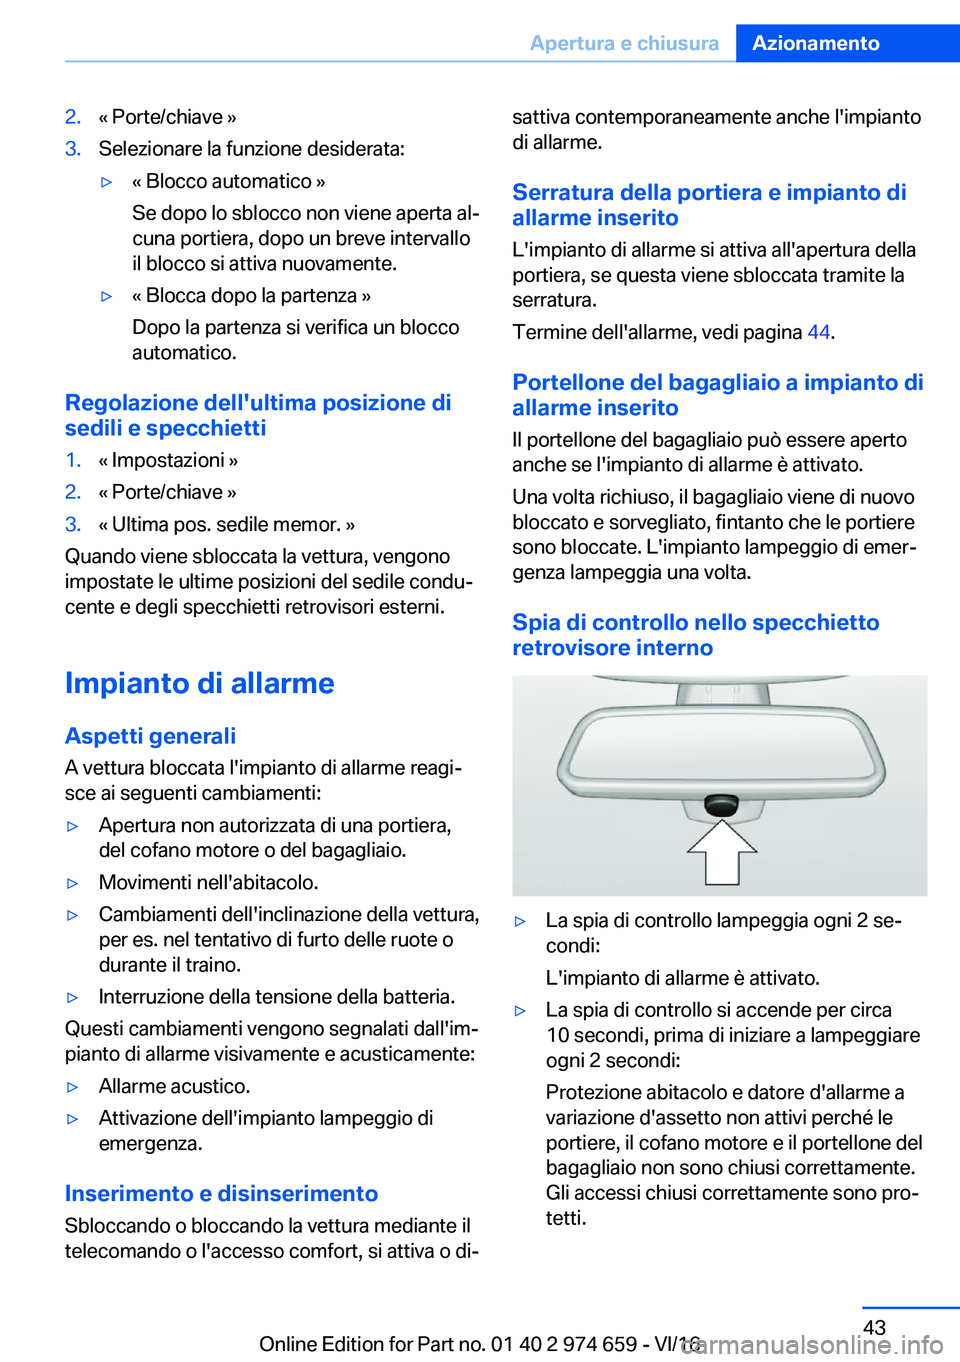 BMW M2 2017  Libretti Di Uso E manutenzione (in Italian) �2�.�«� �P�o�r�t�e�/�c�h�i�a�v�e� �{�3�.�S�e�l�e�z�i�o�n�a�r�e� �l�a� �f�u�n�z�i�o�n�e� �d�e�s�i�d�e�r�a�t�a�:'y�«� �B�l�o�c�c�o� �a�u�t�o�m�a�t�i�c�o� �{
�S�e� �d�o�p�o� �l�o� �s�b�l�o�c�c�o� �